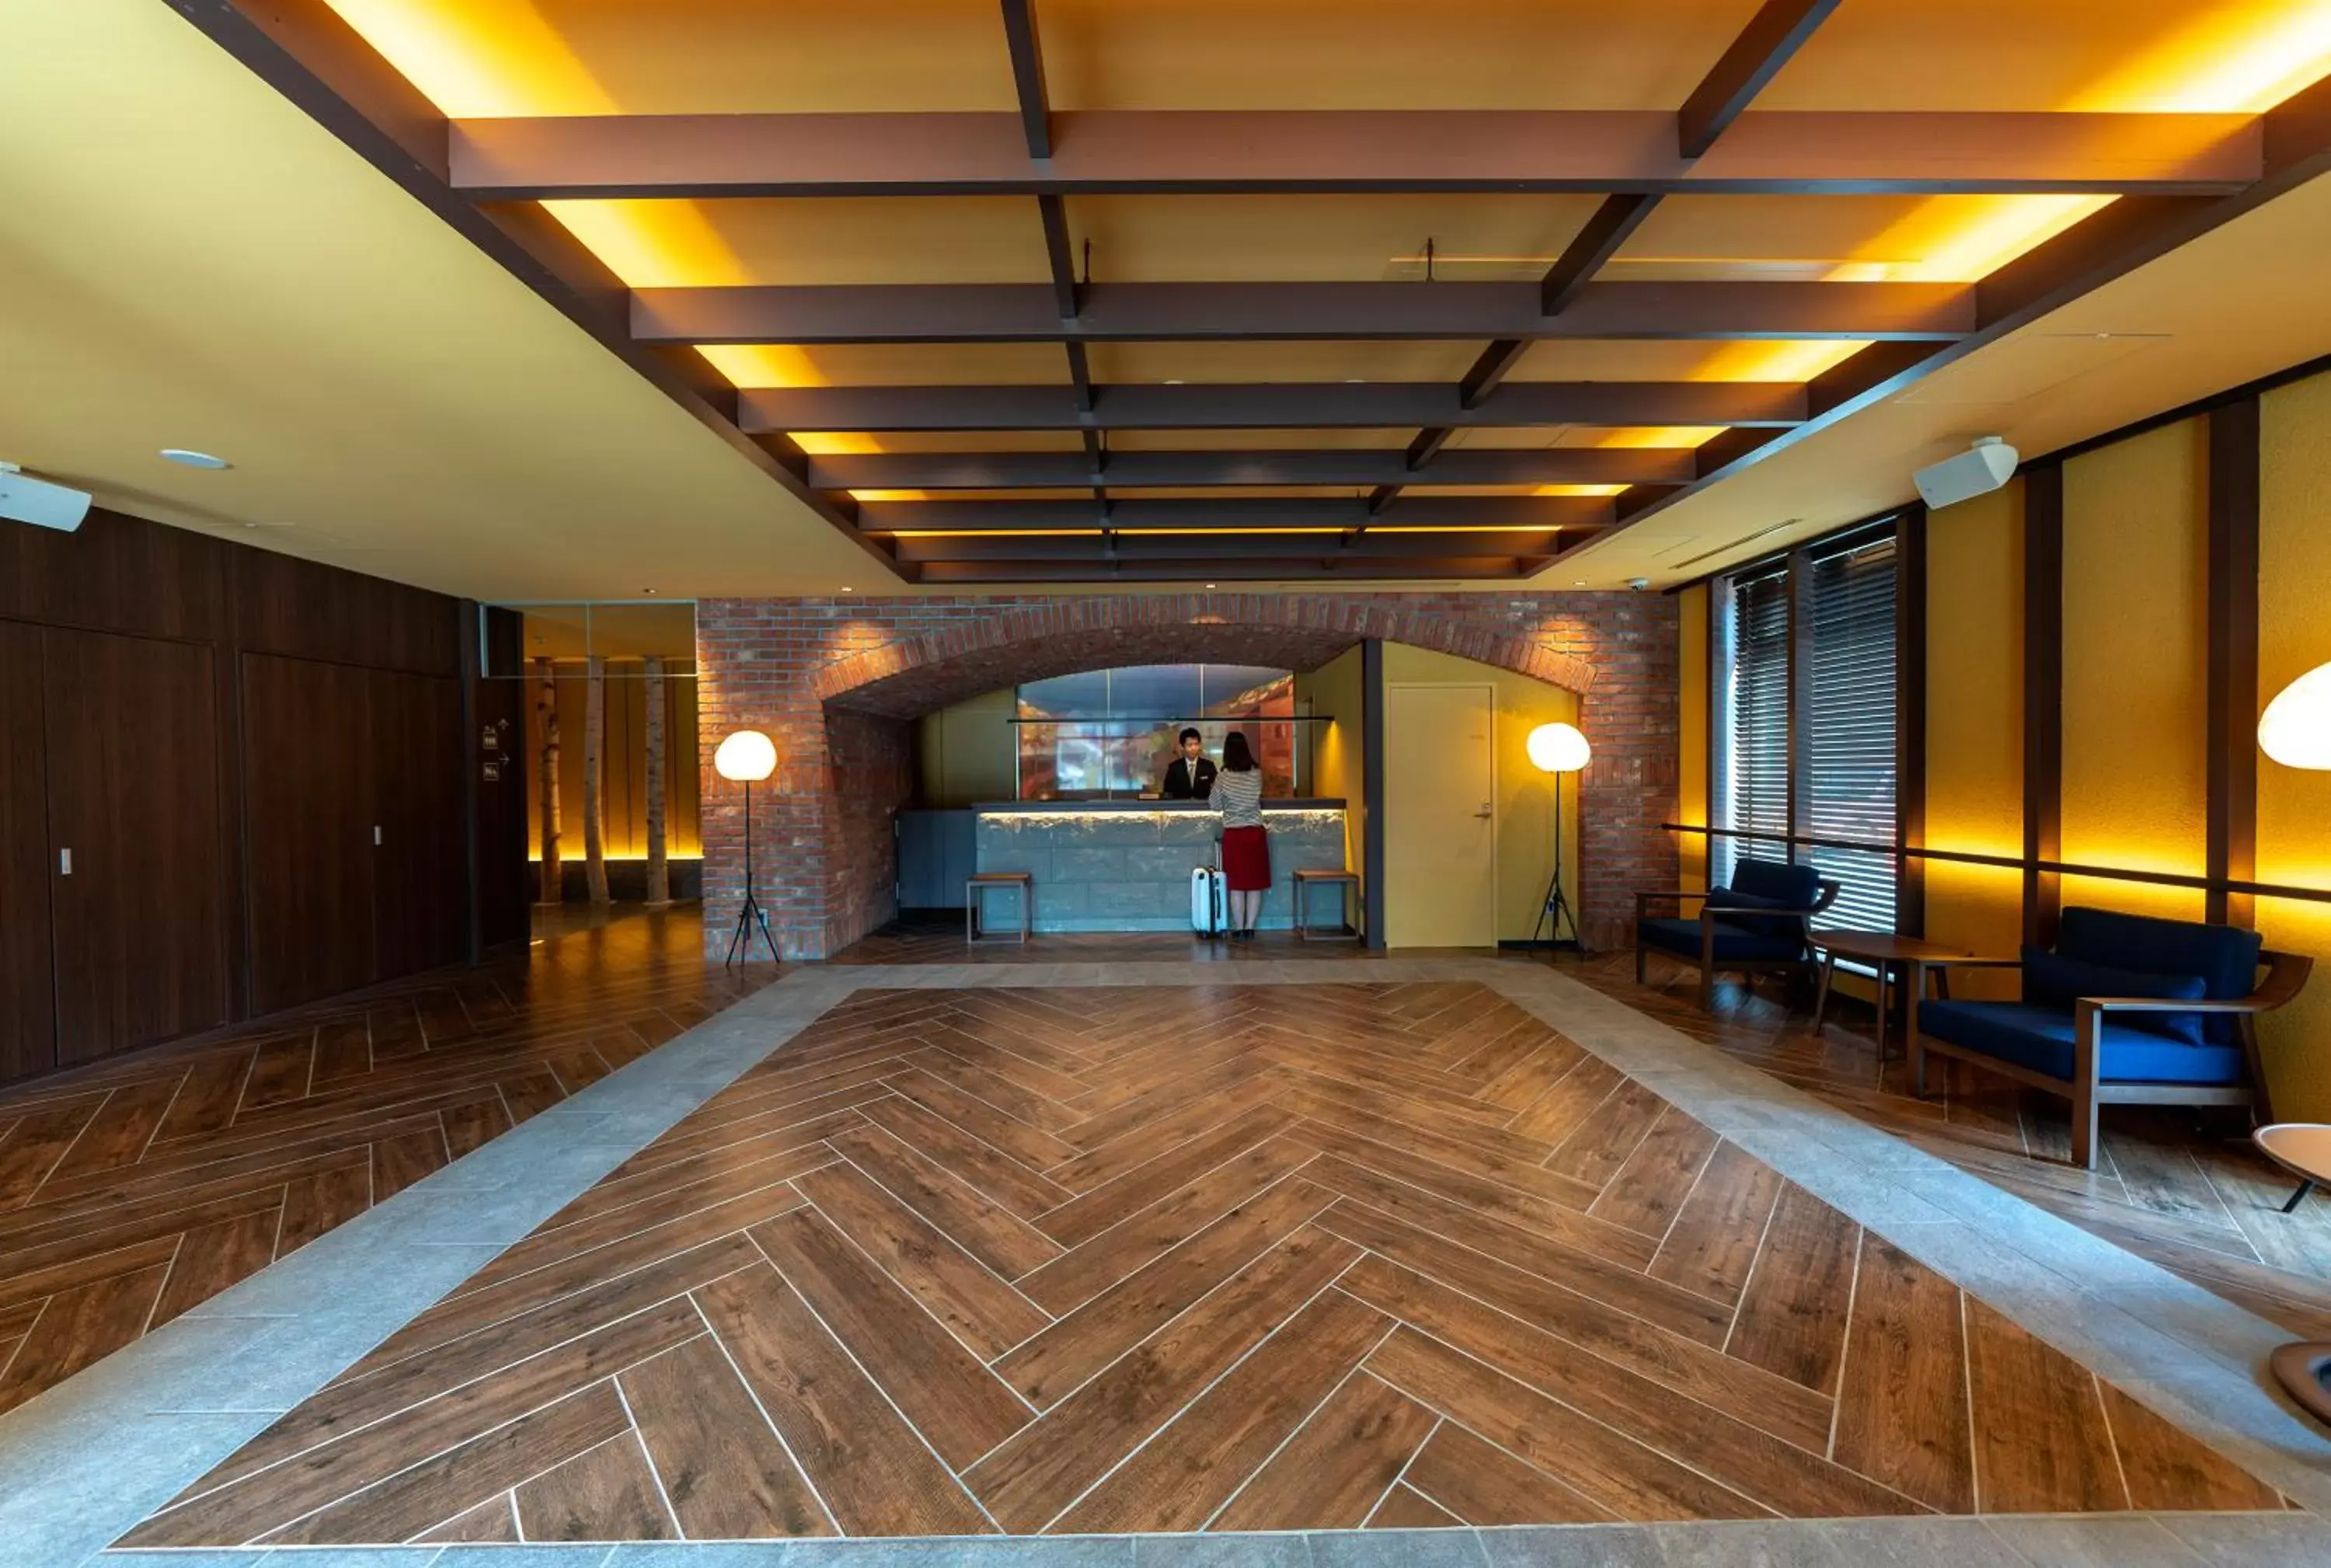 Lobby or reception, Lobby/Reception in Hotel Torifito Otaru Canal